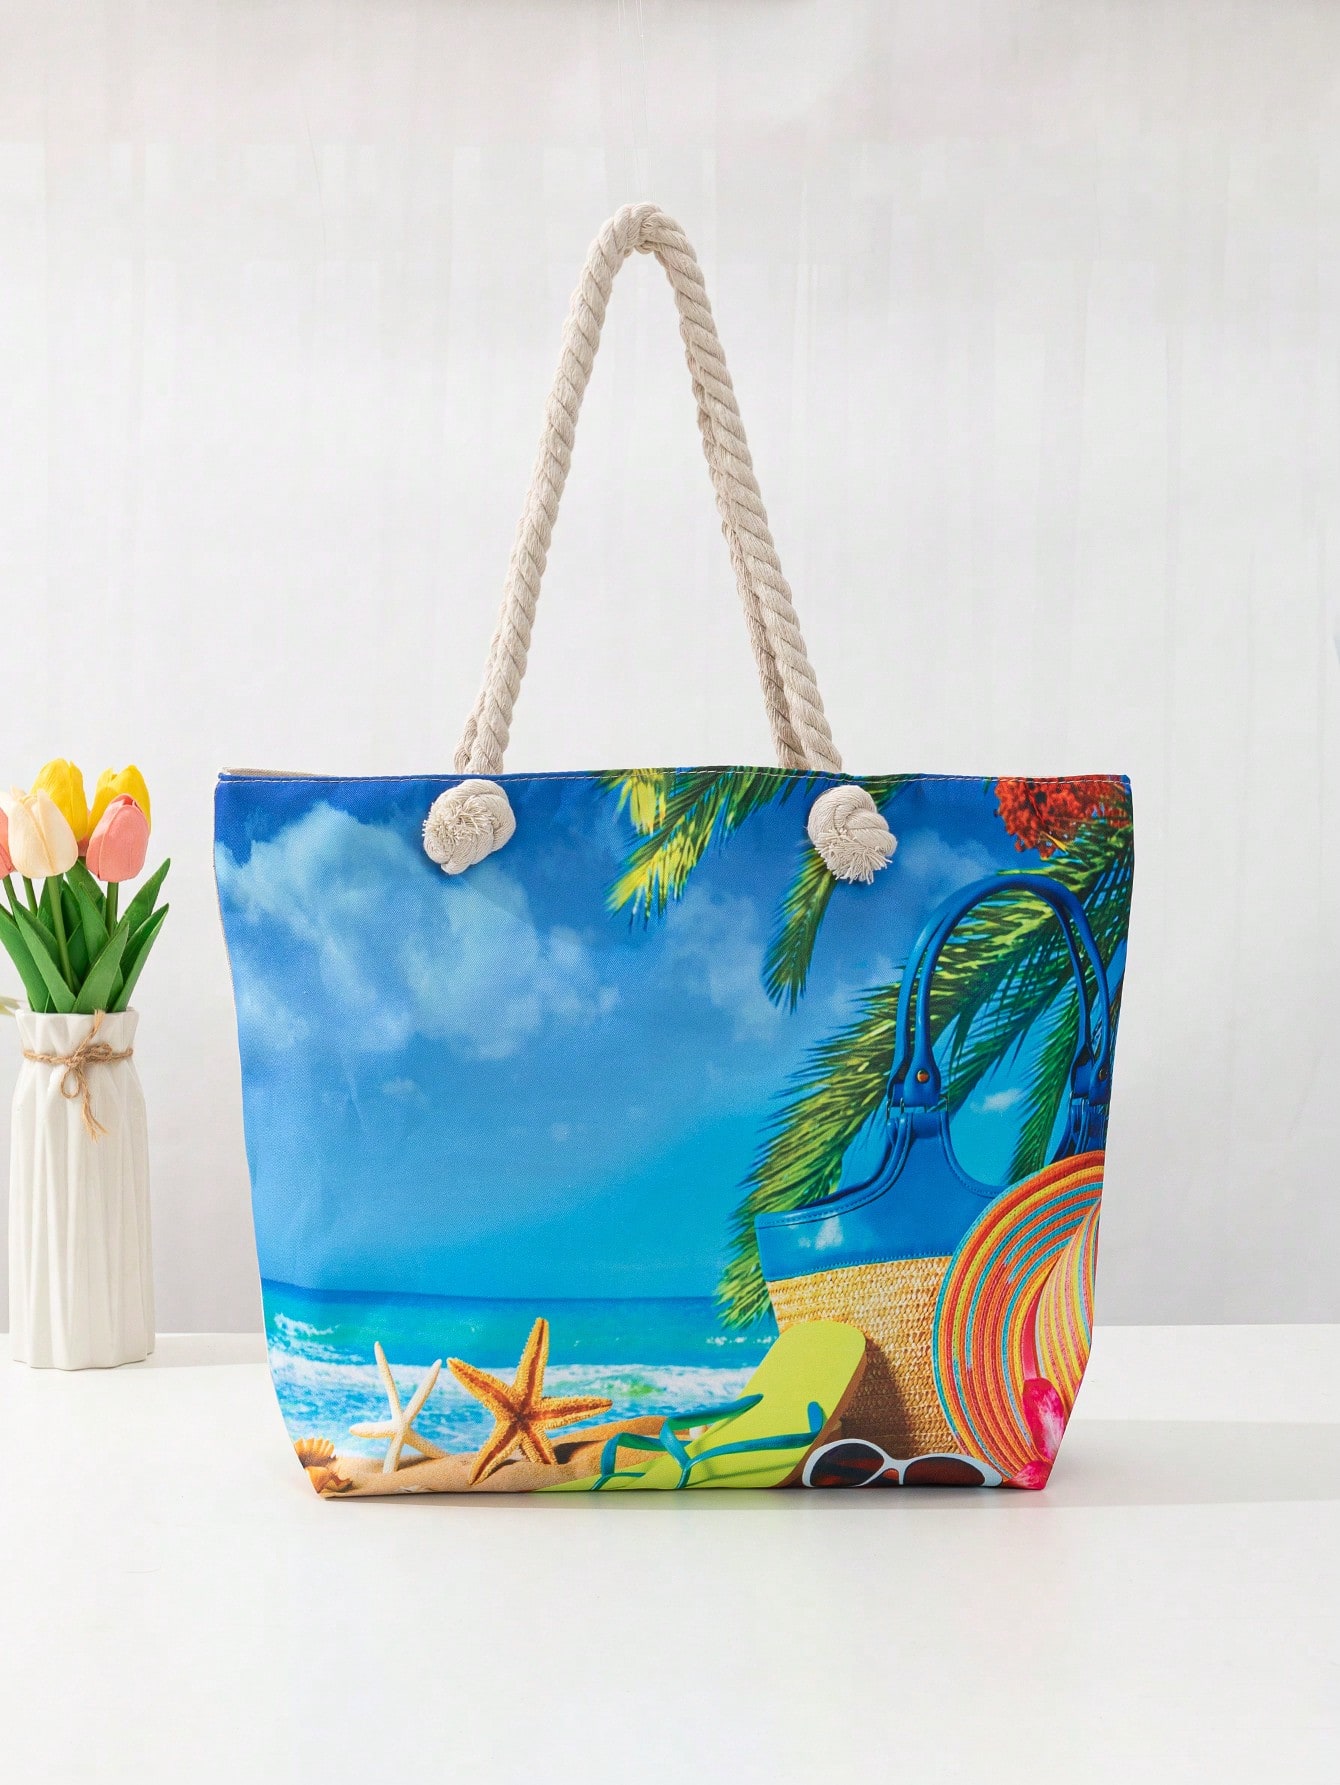 Повседневная пляжная сумка-тоут с радужной шляпой и принтом, многоцветный сумка пляжная повседневная полиэстер синтетический материал дерево белый